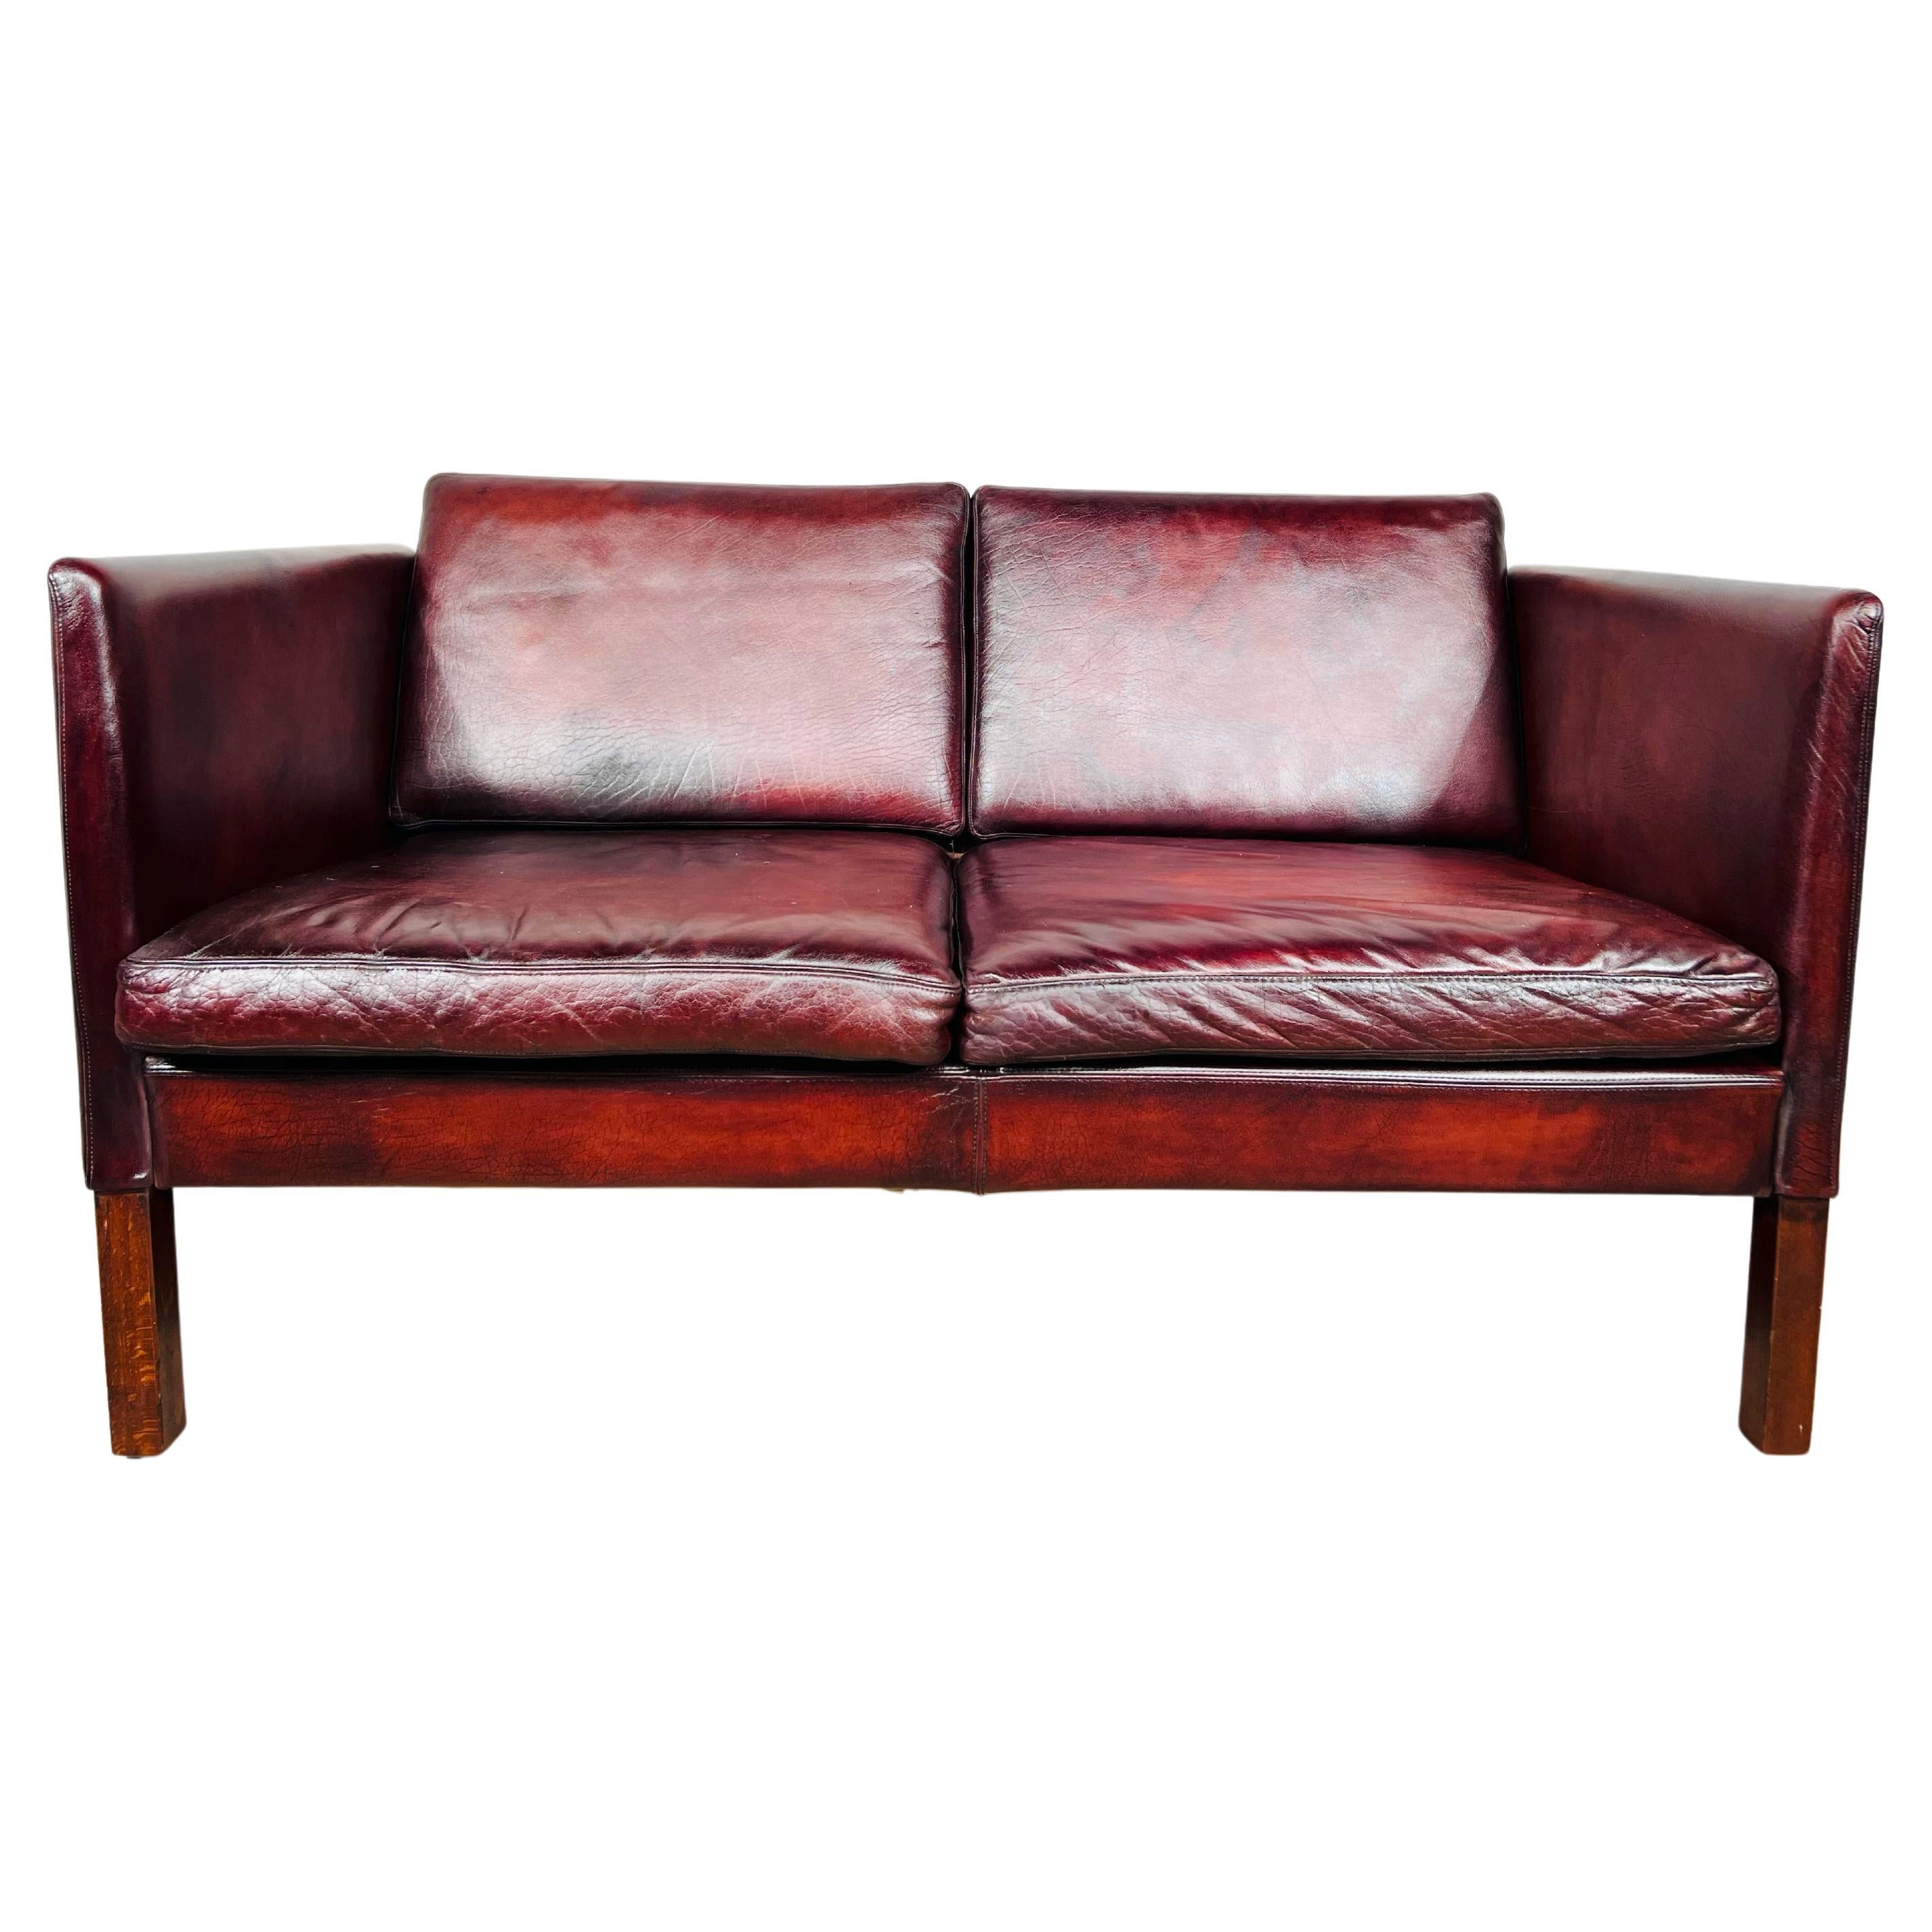 Zweisitziges dänisches Vintage-Sofa aus Kastanienholz, 70er-Jahre, Vintage #596